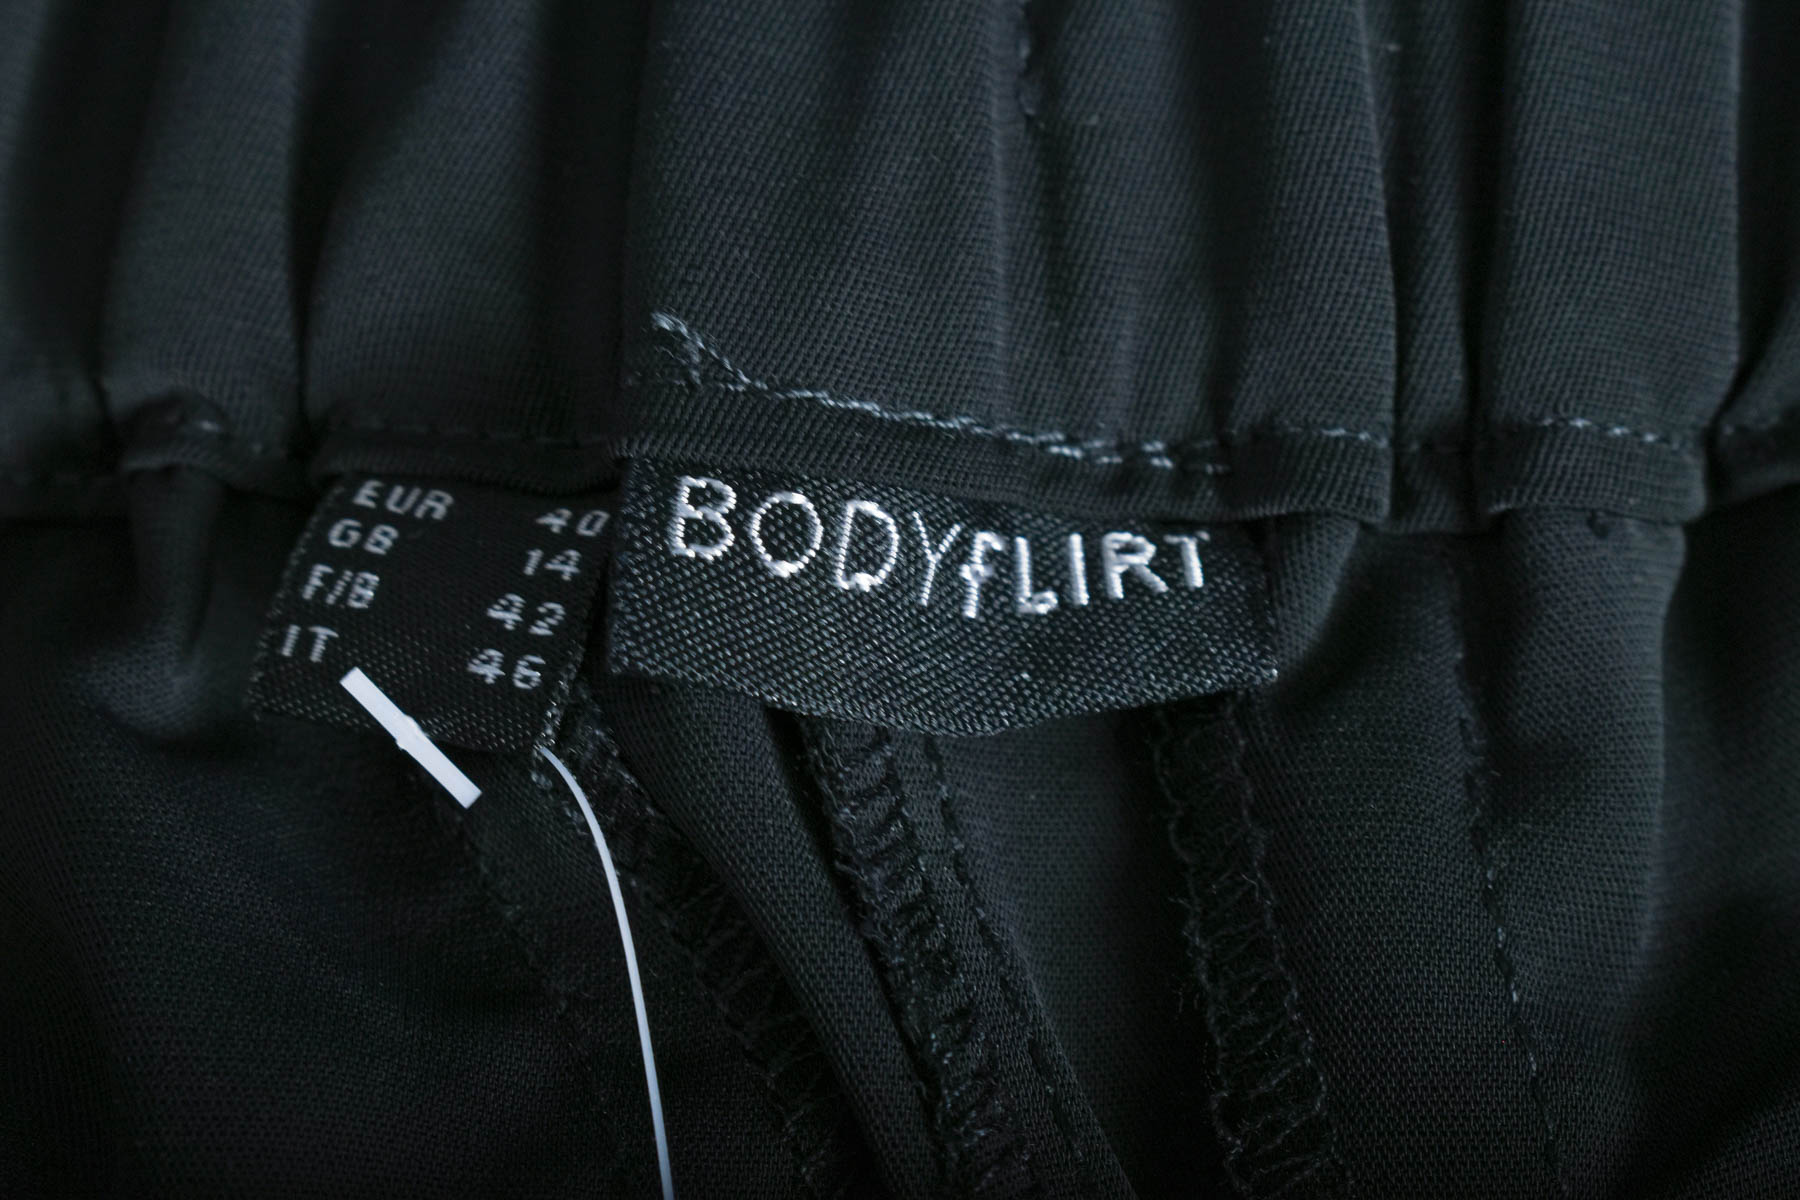 Дамски панталон - BODYFLIRT - 2